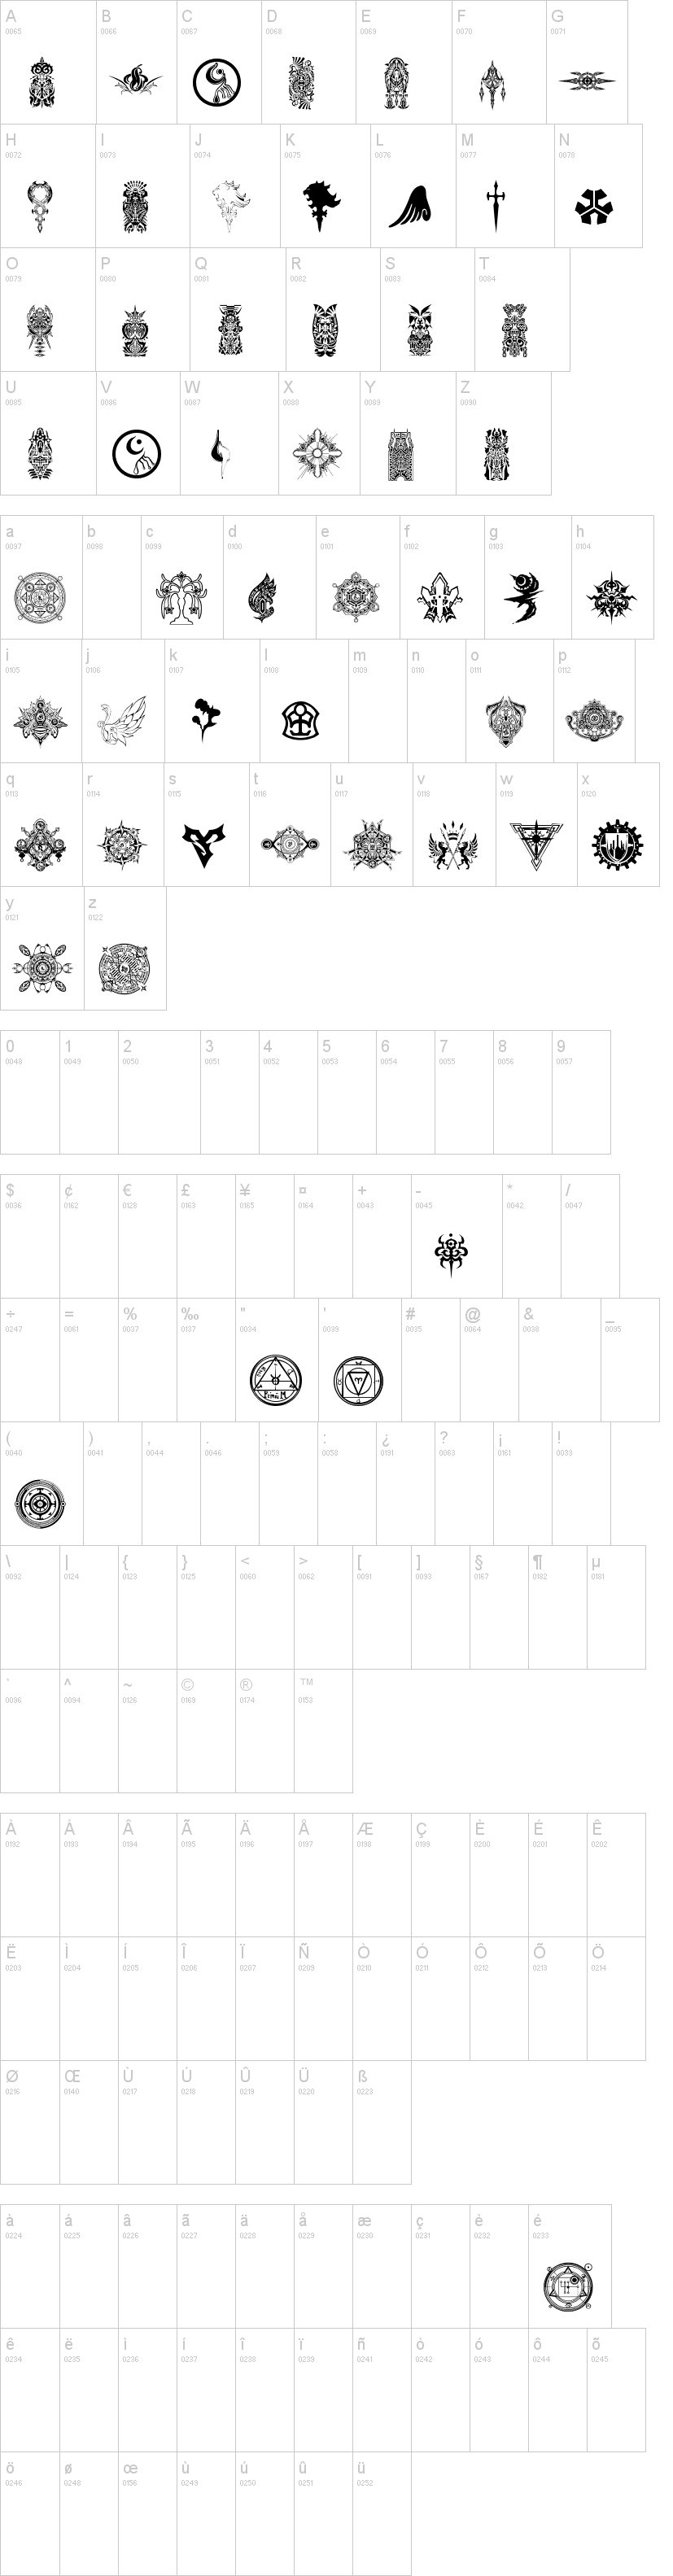 Final Fantasy Symbols Font Dafont Com